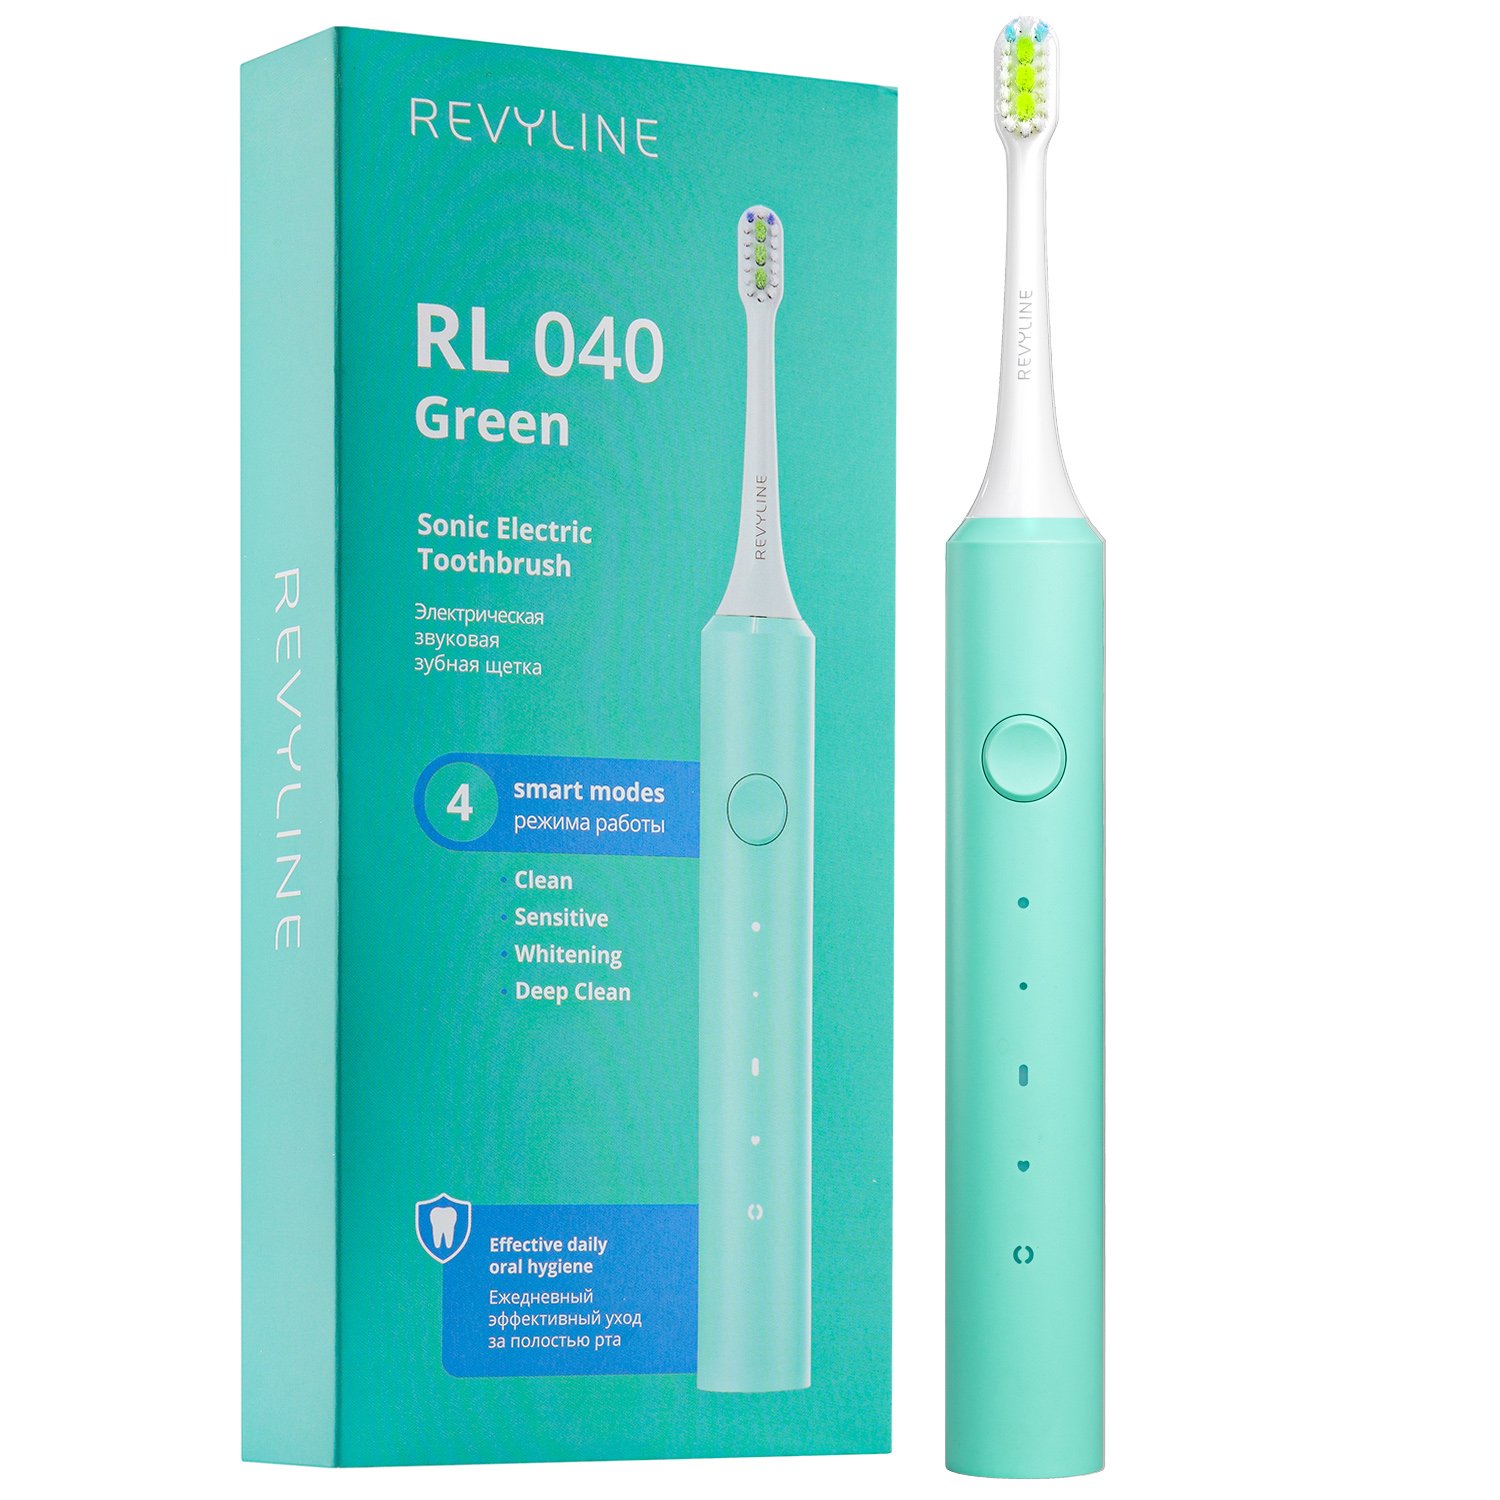 Электрическая зубная щетка Revyline RL 040